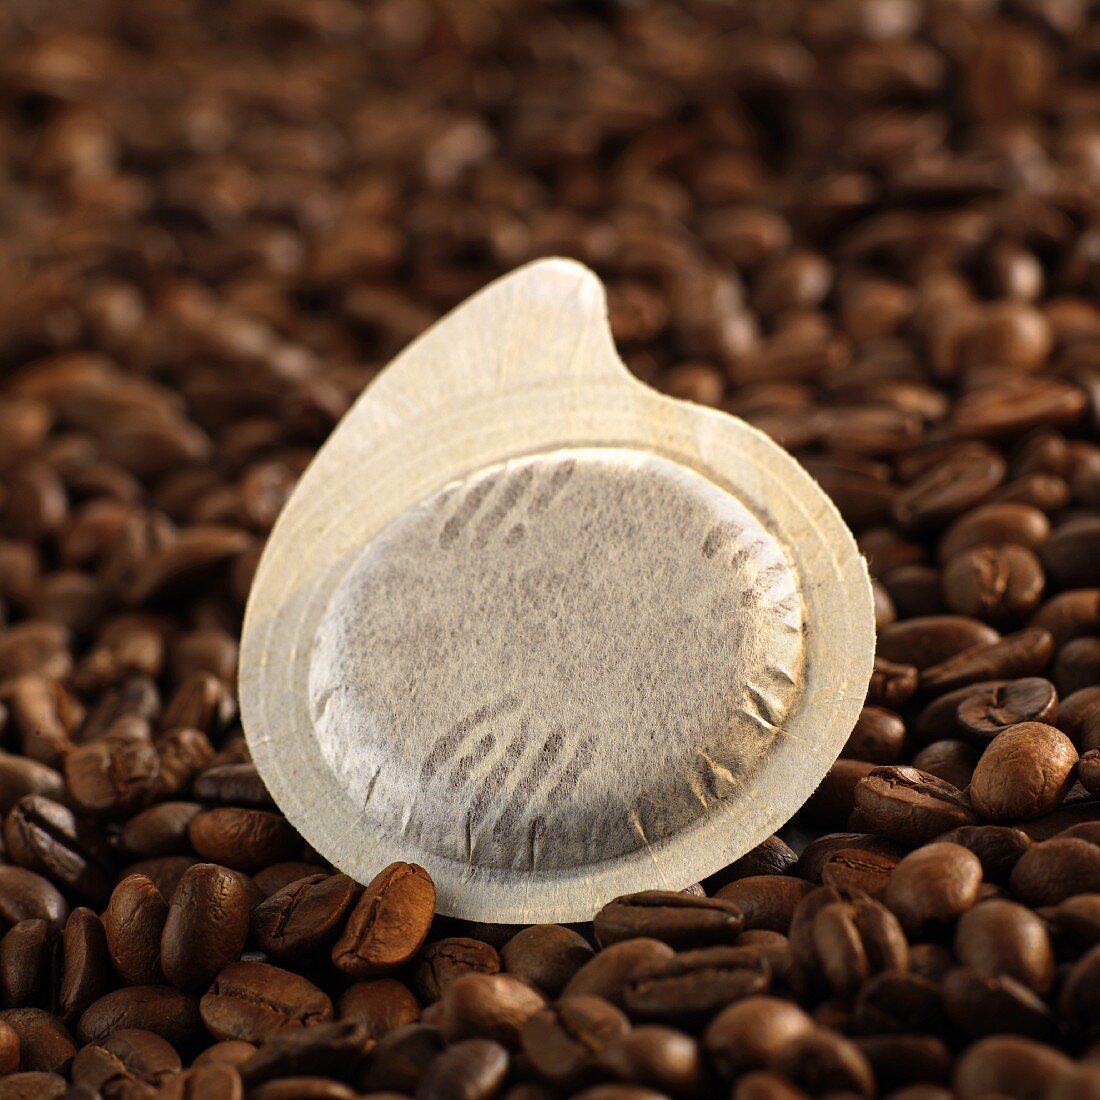 Espressopad auf Kaffeebohnen